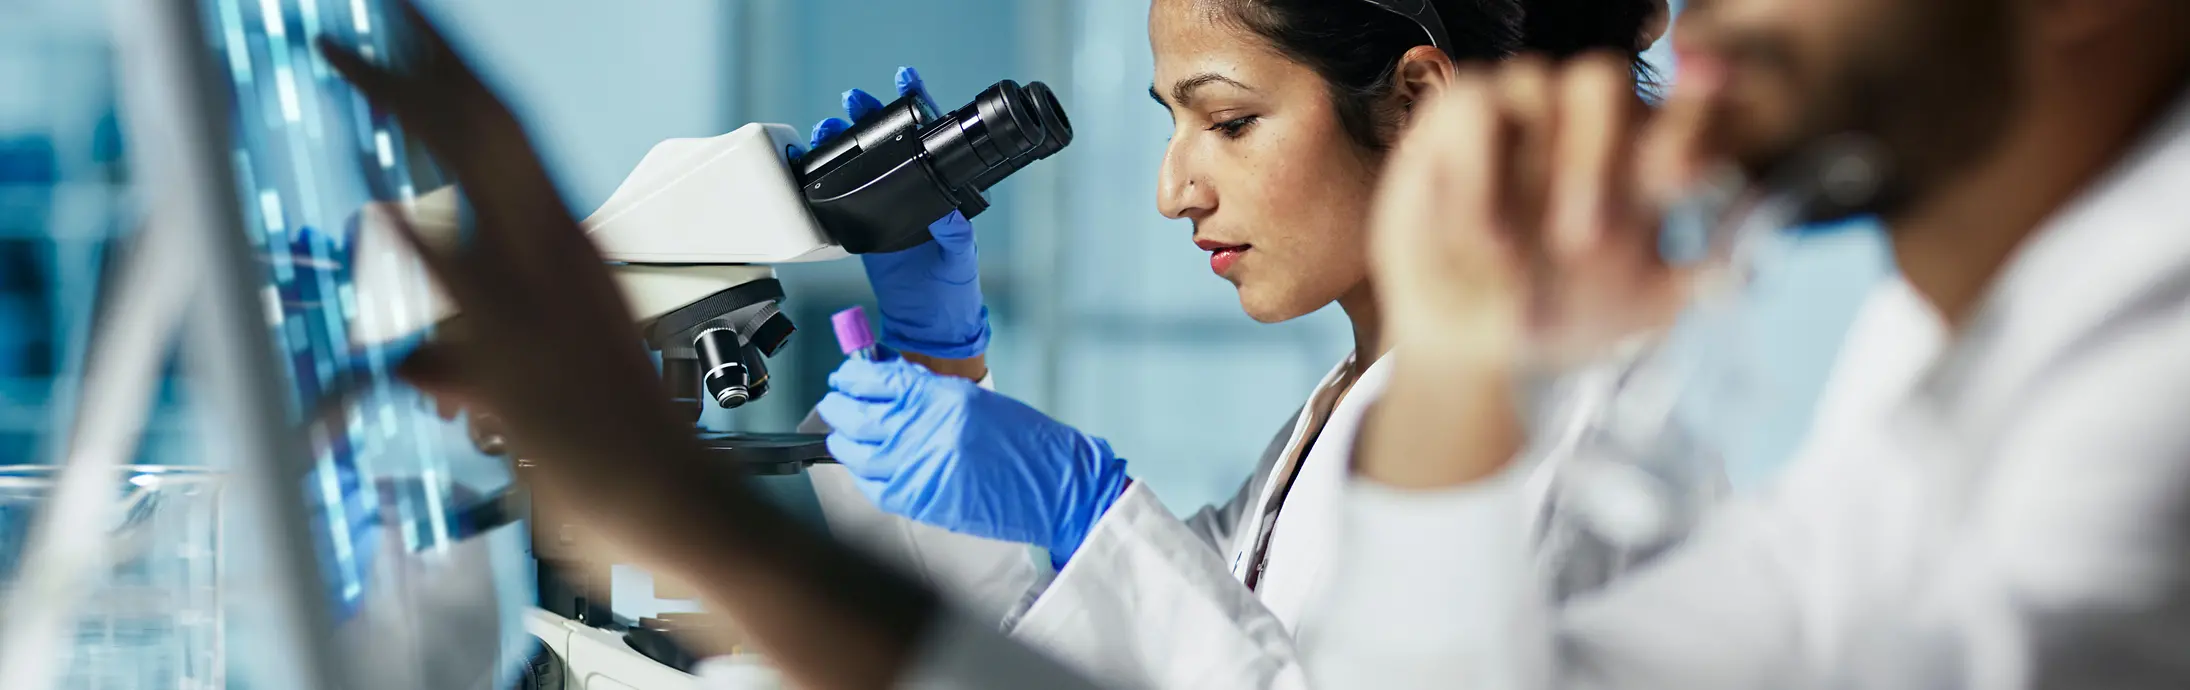 um laboratório com uma mulher sentada em frente a um microscópio, olhando uma amostra e na frente um homem com barba olhando para uma tela 